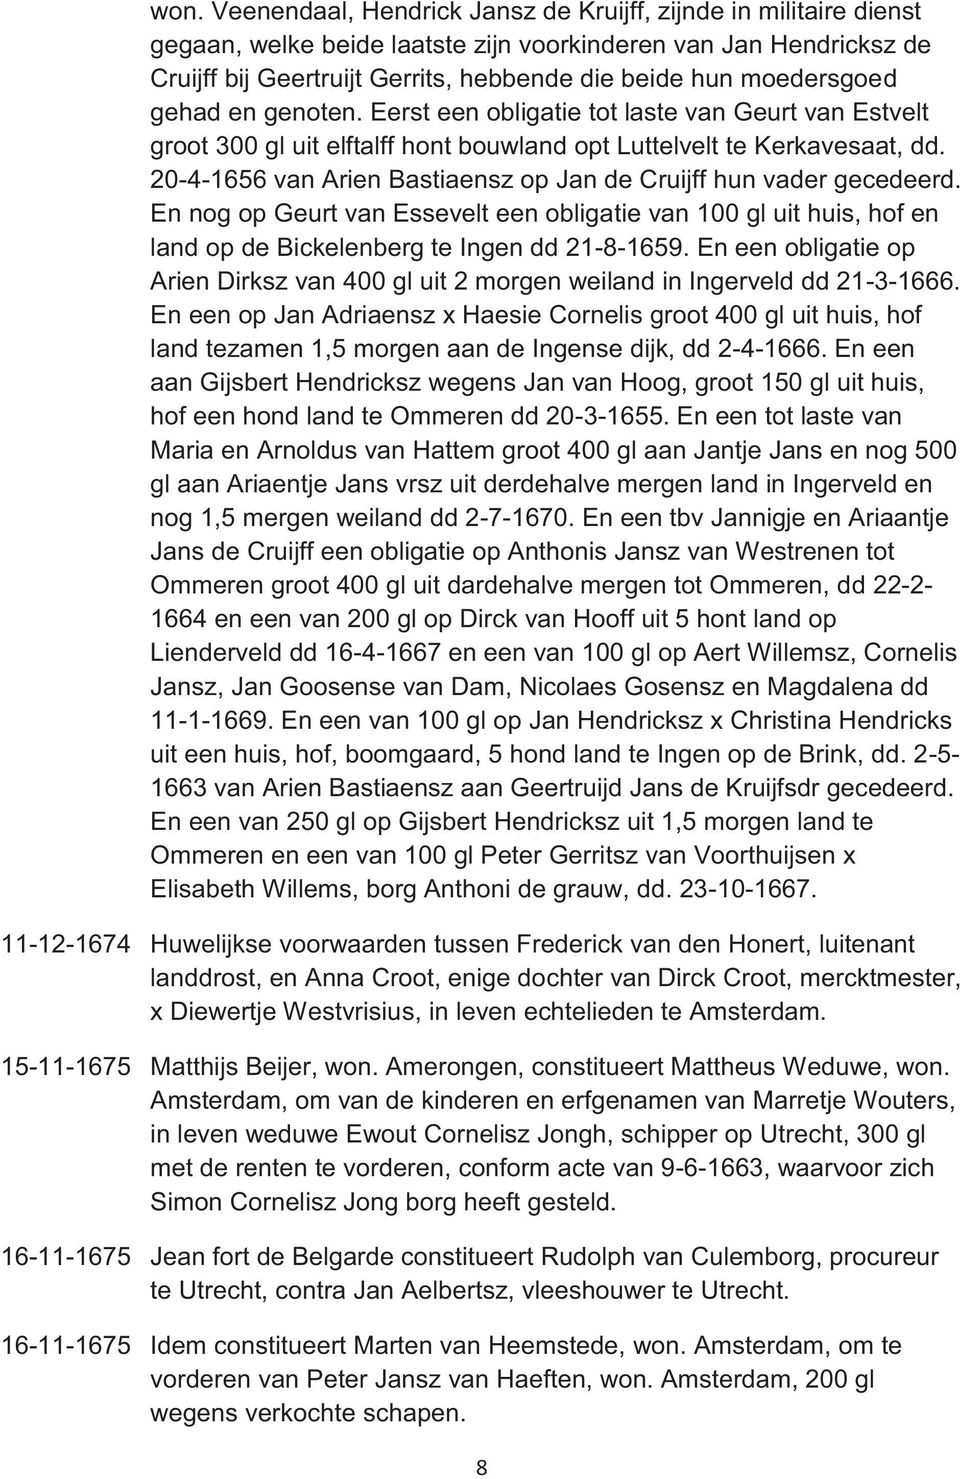 20-4-1656 van Arien Bastiaensz op Jan de Cruijff hun vader gecedeerd. En nog op Geurt van Essevelt een obligatie van 100 gl uit huis, hof en land op de Bickelenberg te Ingen dd 21-8-1659.